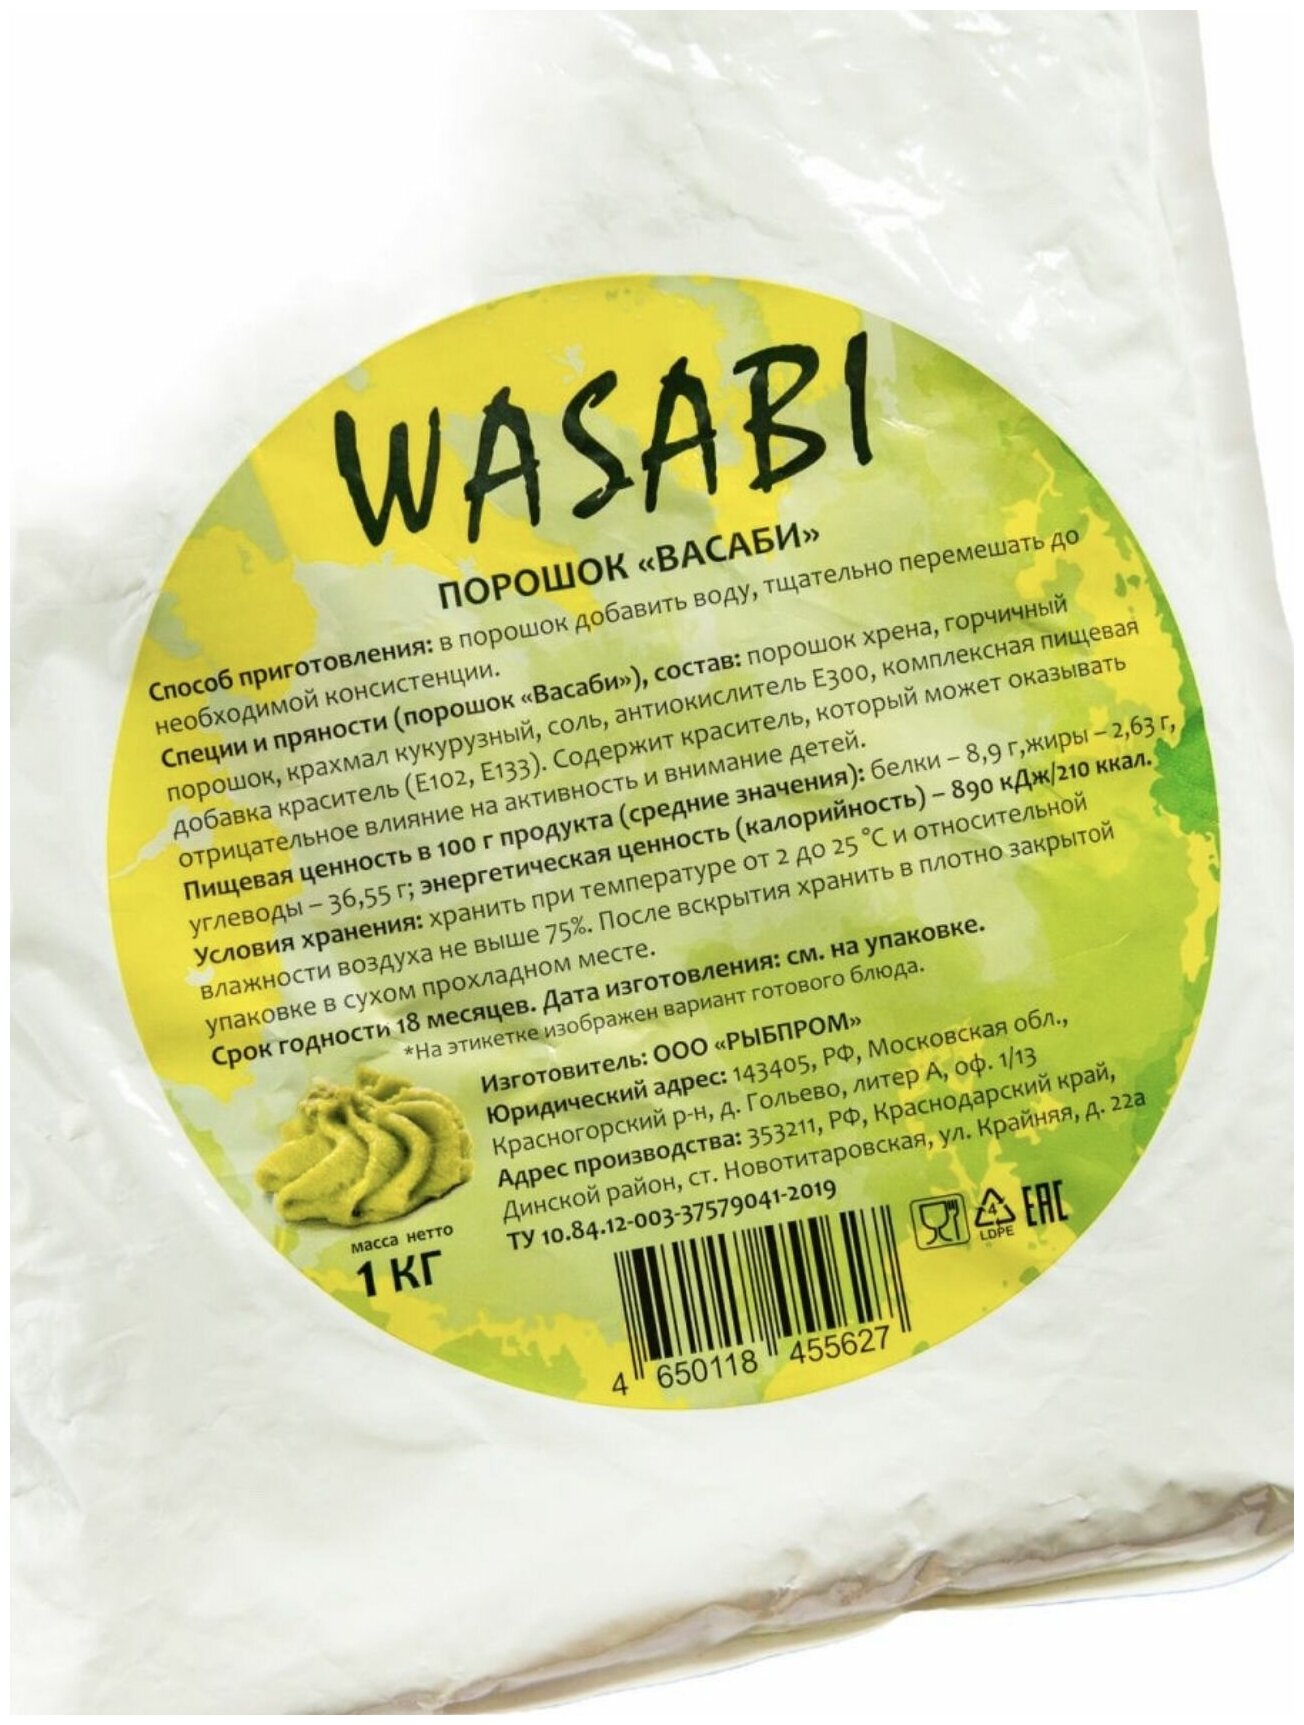 Wasabi суши отзывы фото 68